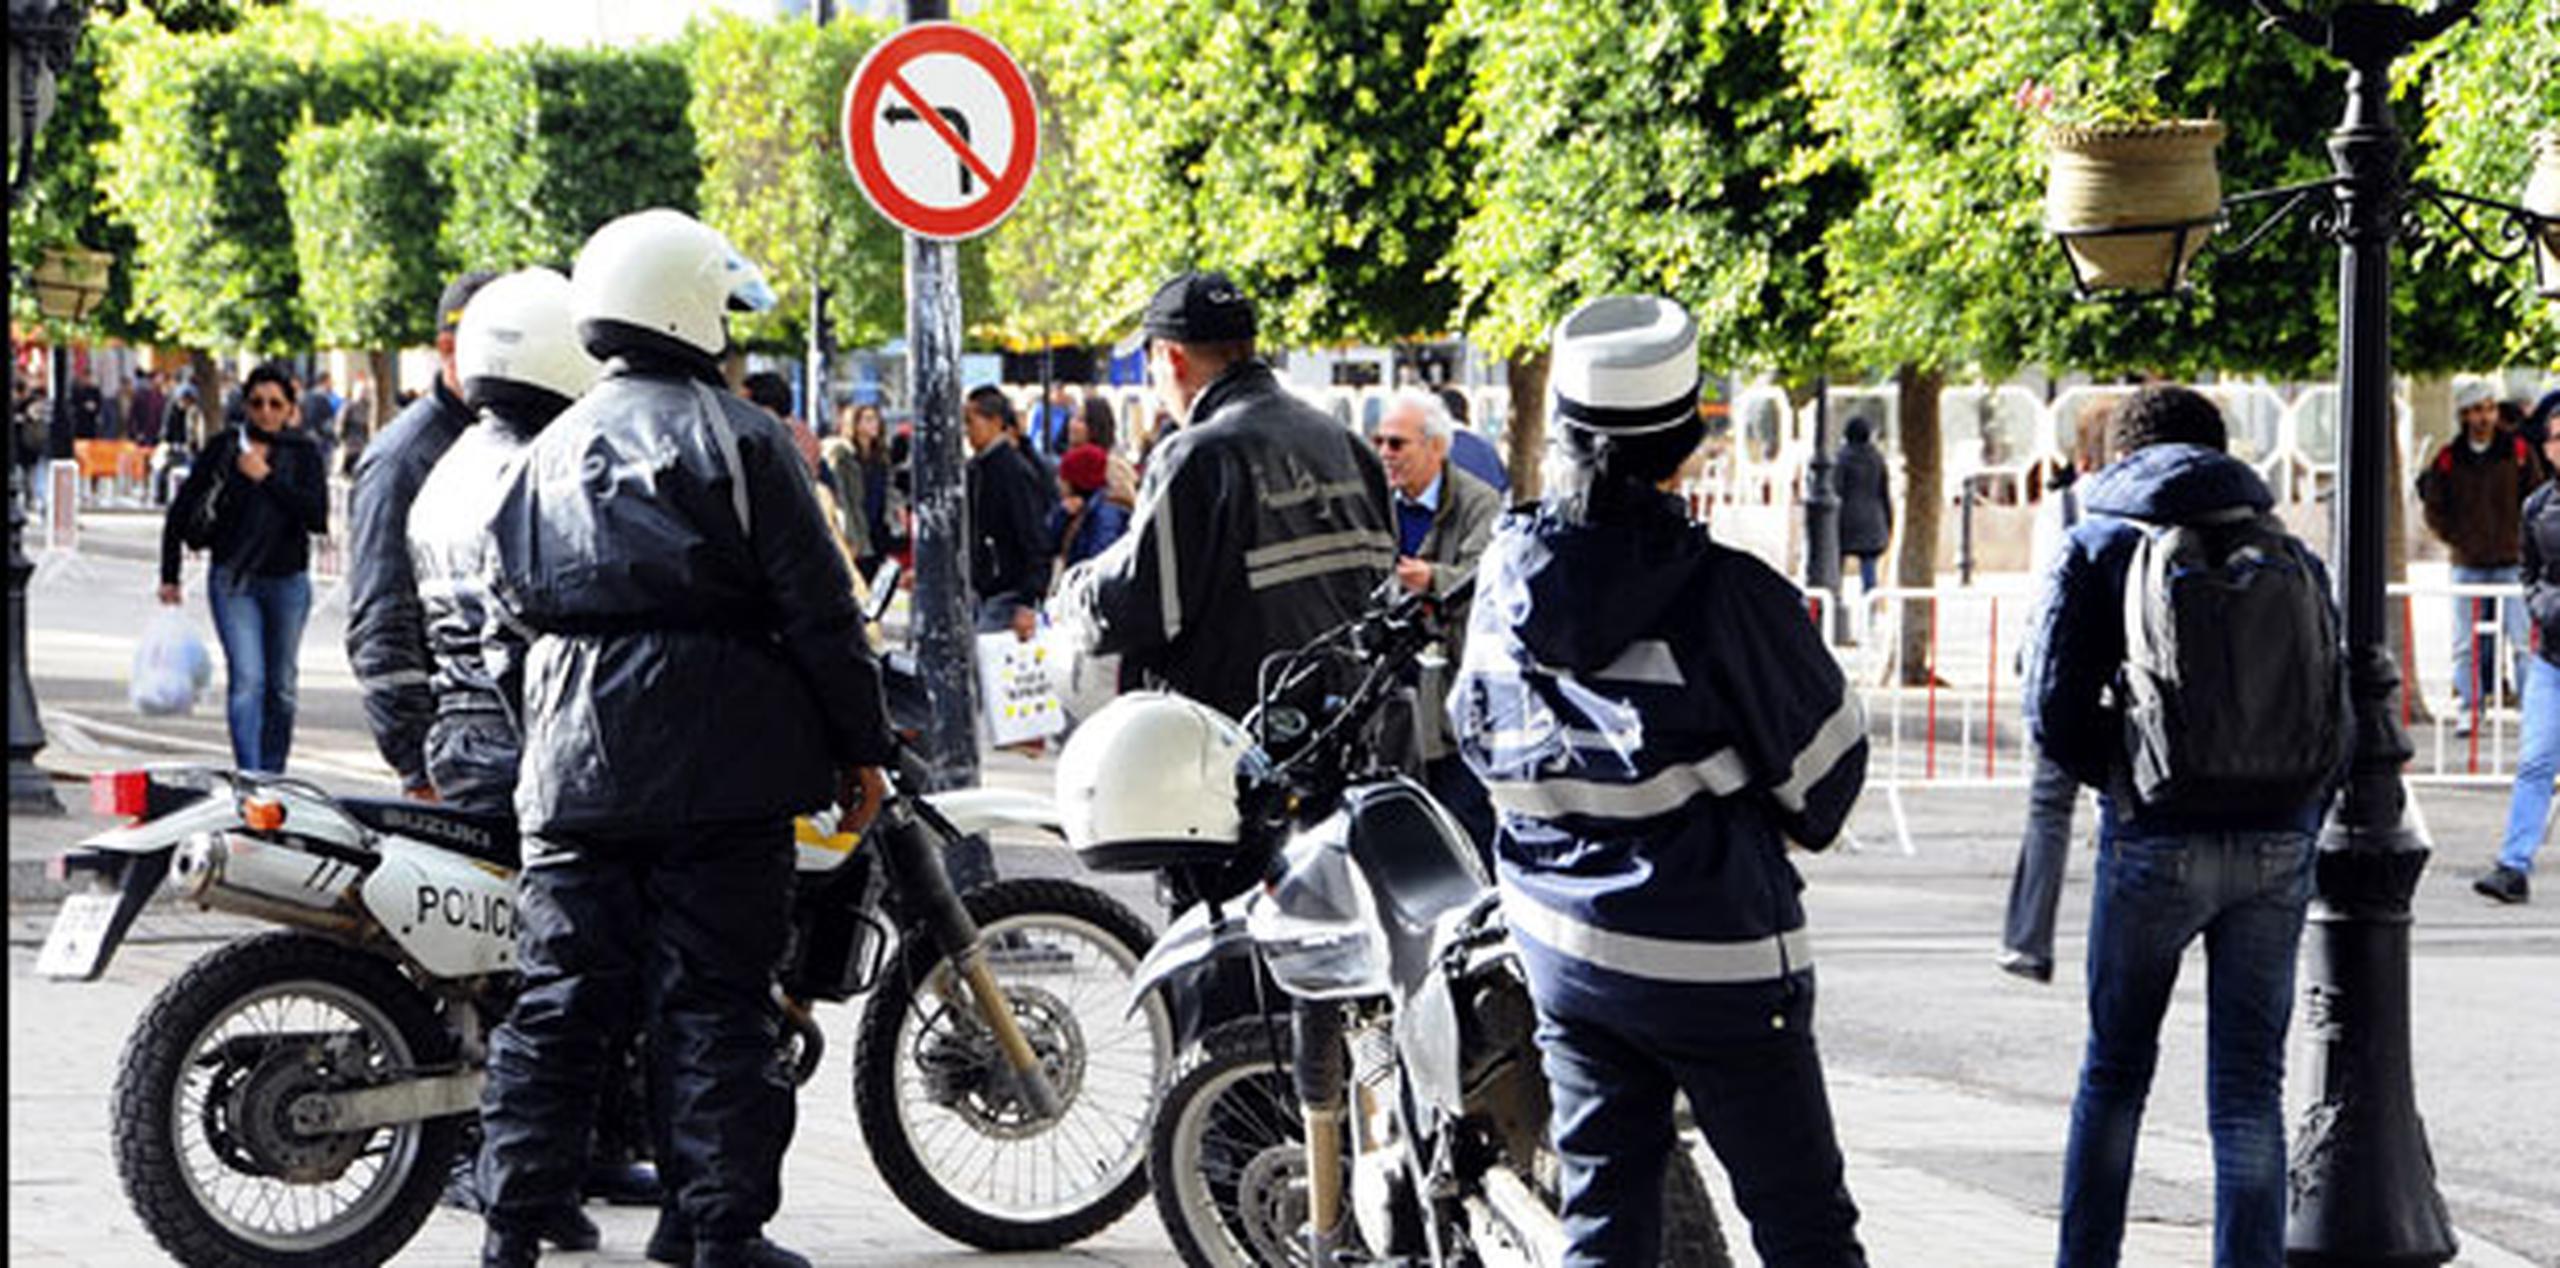 Ayer, la Policía tunecina detuvo a tres hombres a los que acusó de intentar penetrar de forma ilegal en el país desde de la vecina Libia para perpetrar un atentado "en los próximos días", informó el ministerio de Interior. (AP/Hassene Dridi)
